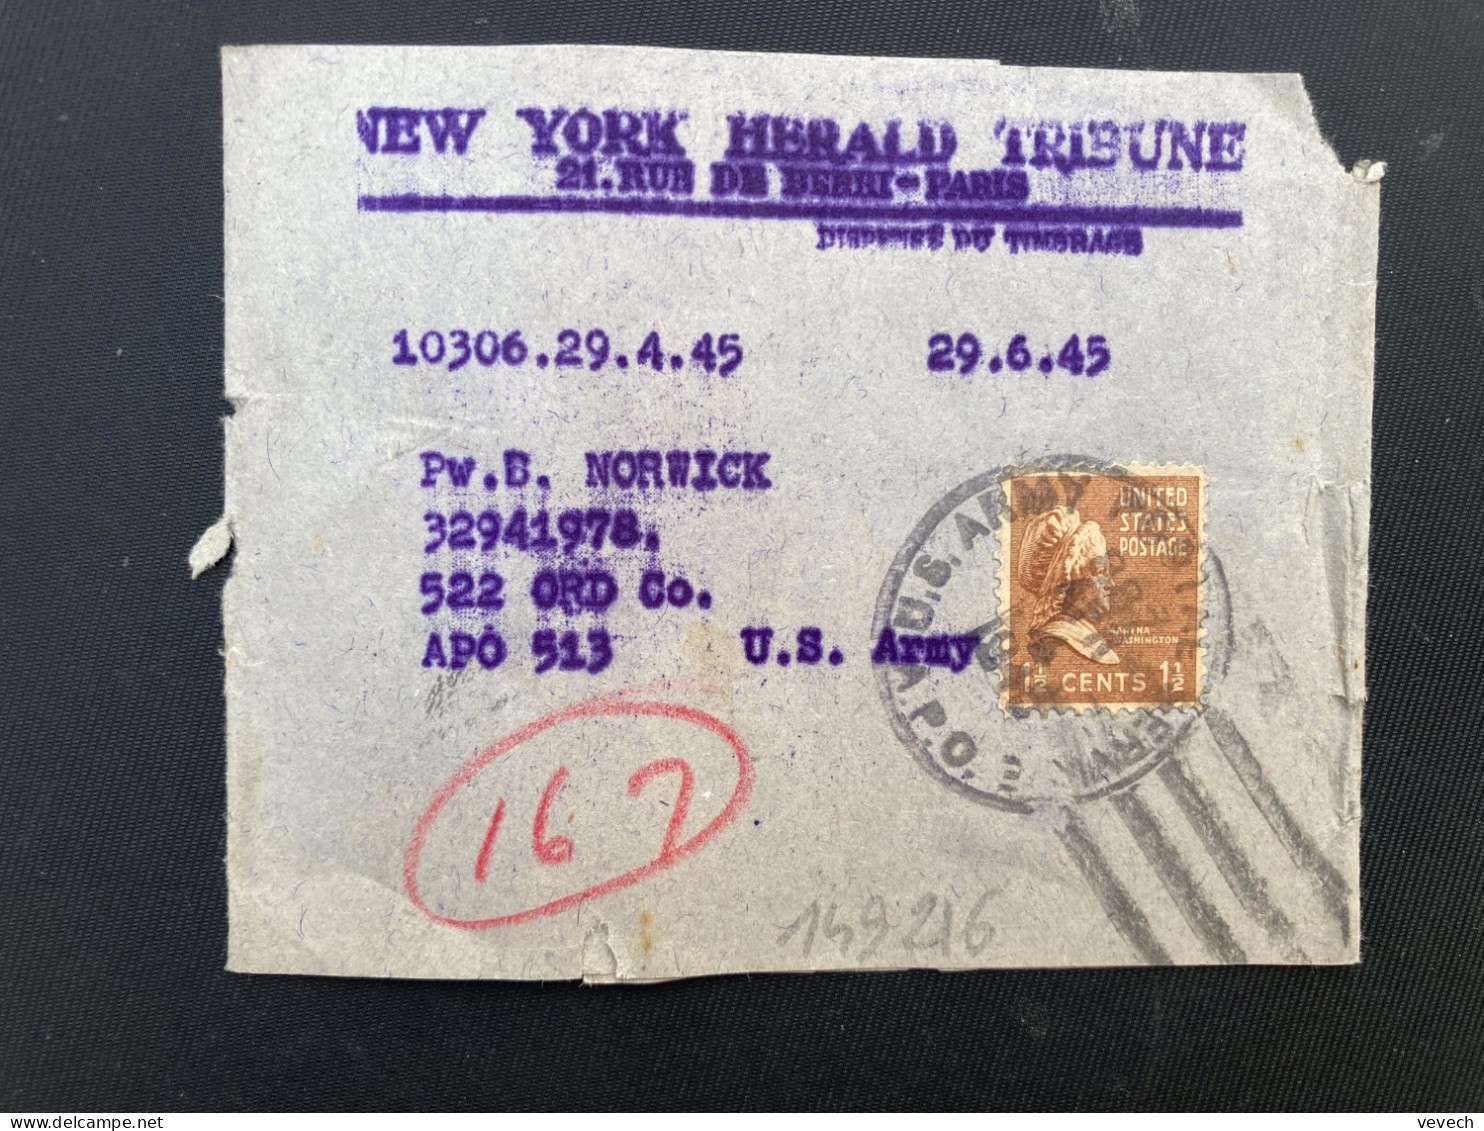 BJ NEW YORK HERALD TRIBUNE Pour APO 513 TP WASHINGTON 1 1/2c OBL.MEC.APR 4 1945 APO 3 - Marcofilie